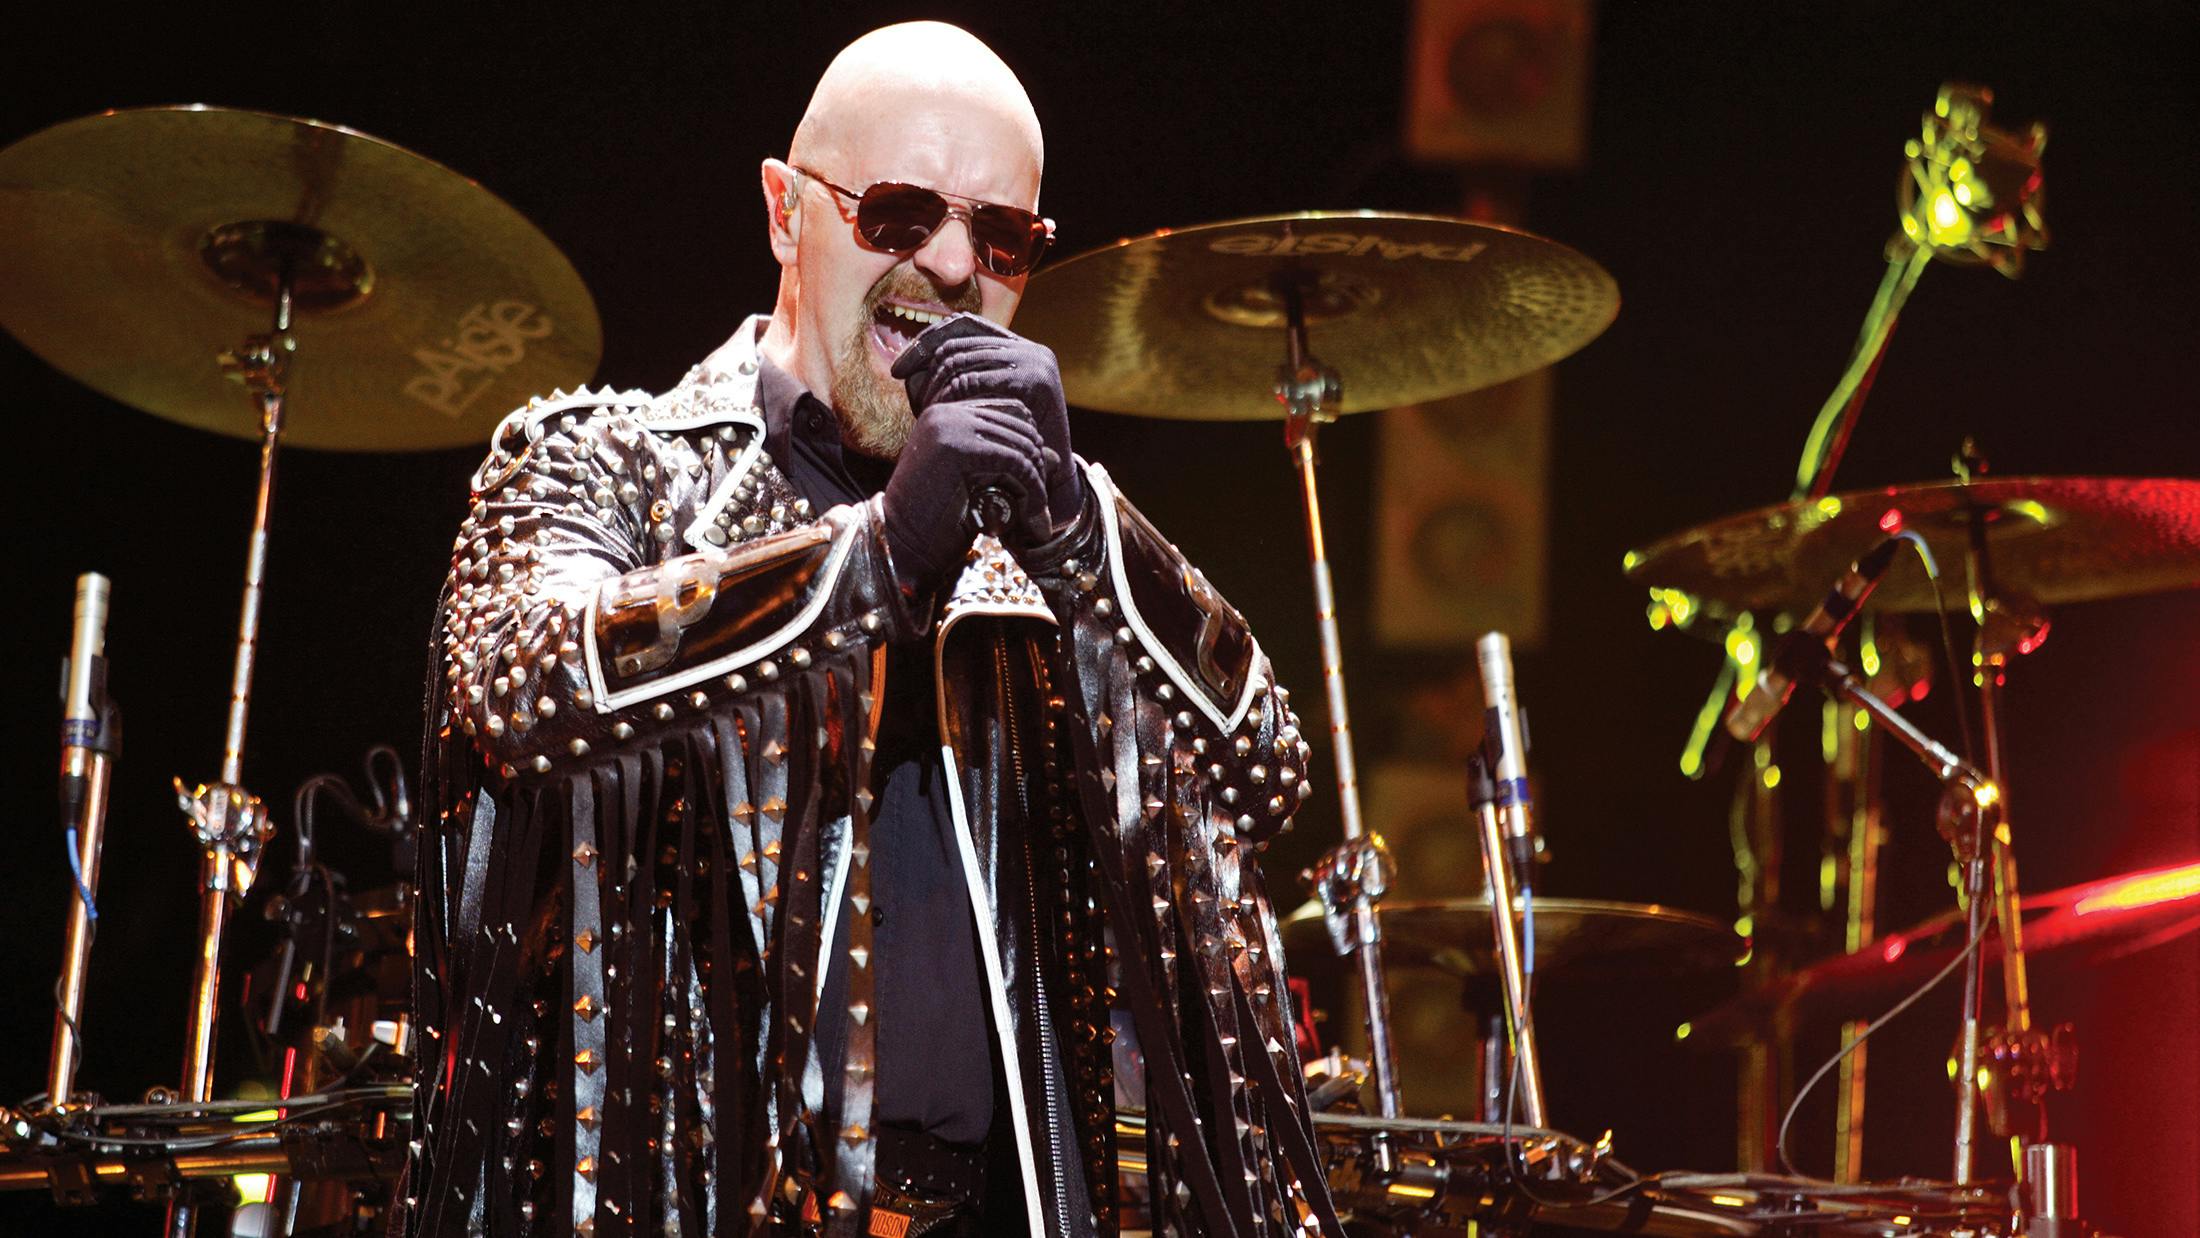 Judas Priest's Rob Halford Announces Christmas Album